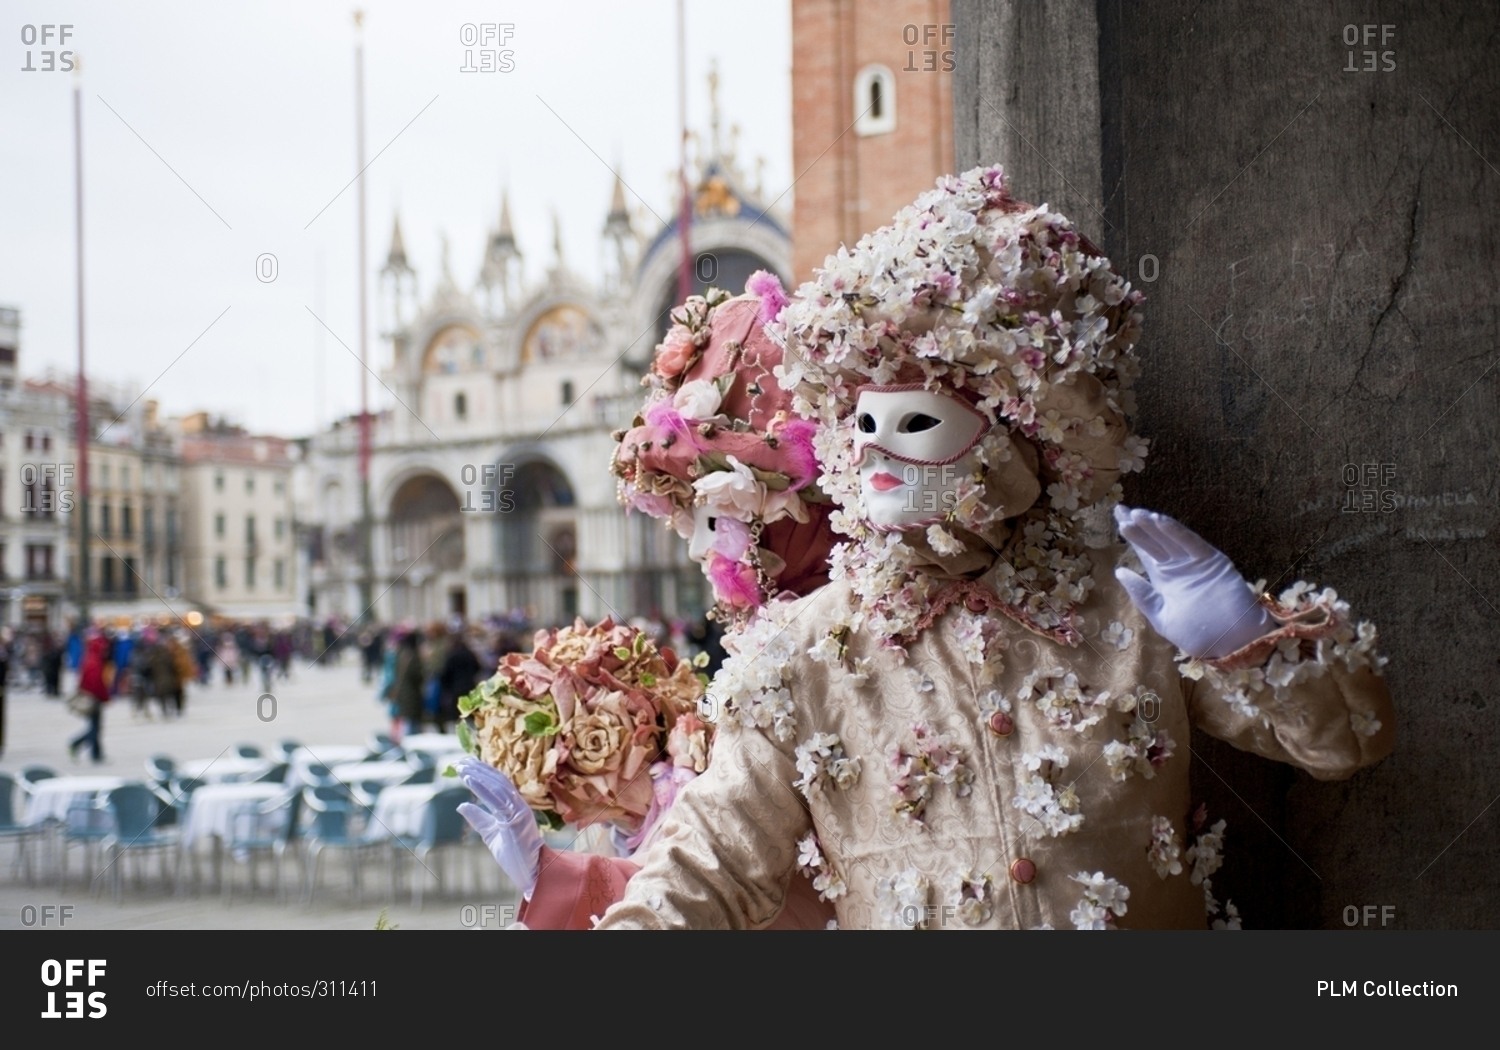 Masks in St. Mark's Square in Venice, Italy